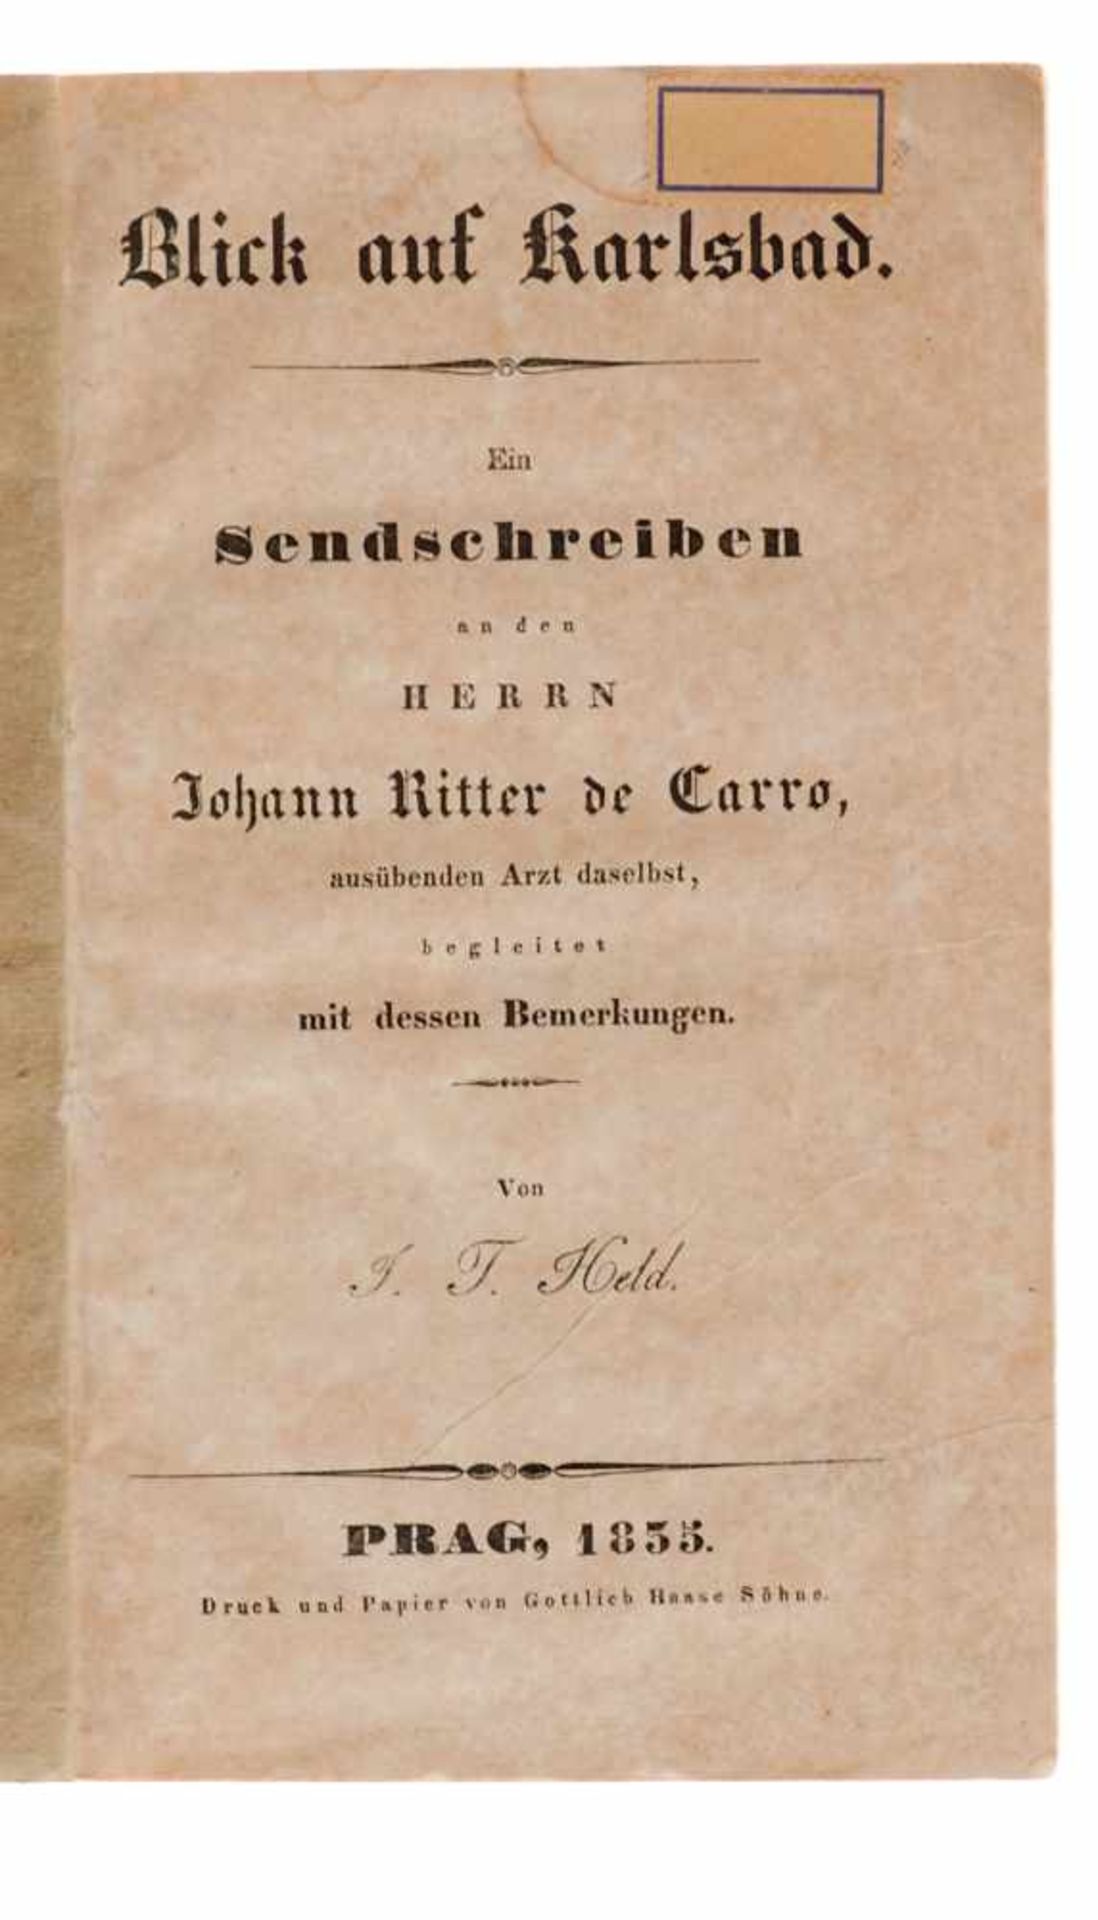 Böhmen und Mähren - Karlsbad Widmungsexemplar Carro, J. de, Ode latine sur Carlsbad, composée vers - Bild 2 aus 3